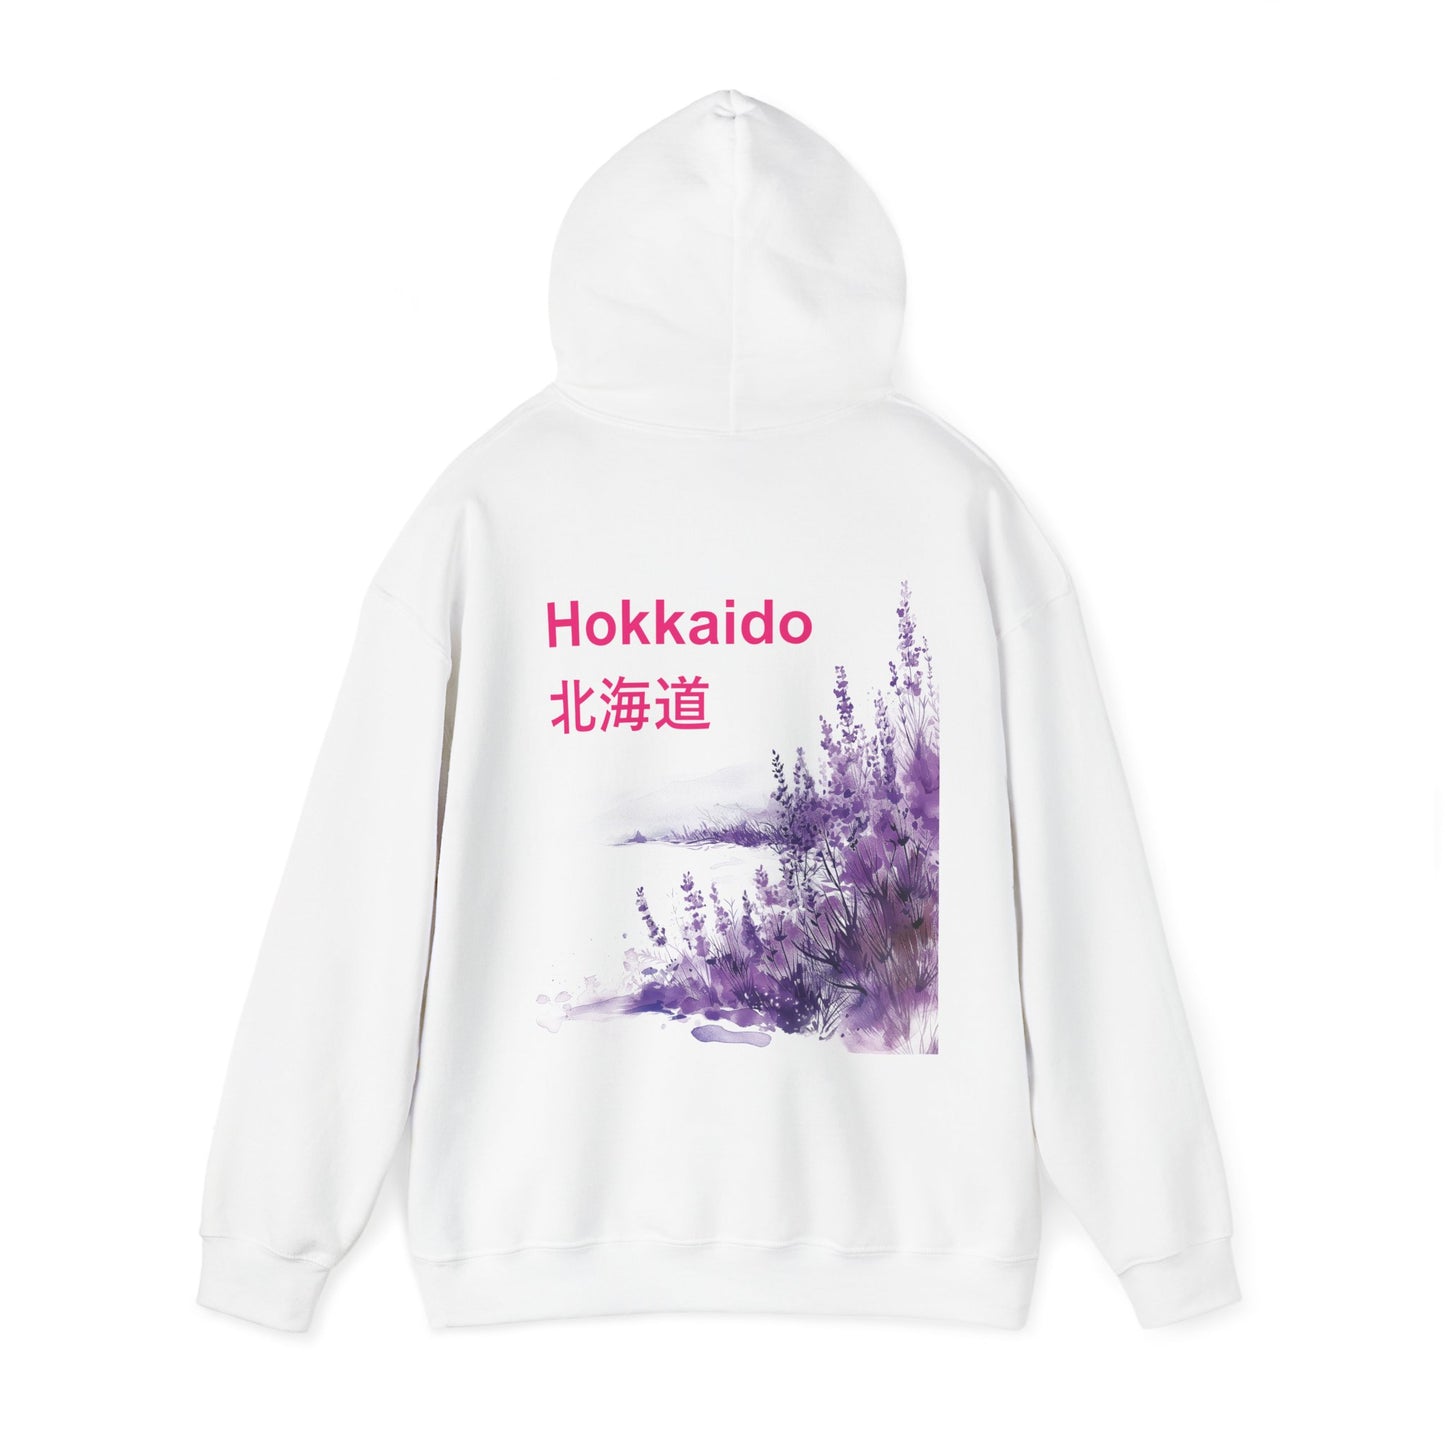 Hokkaido Hoodie, Japanese Sweatshirt, Lavender Sweater, Travel to Japan Hoodie, Visit Japan Hoodie, Gift for Her